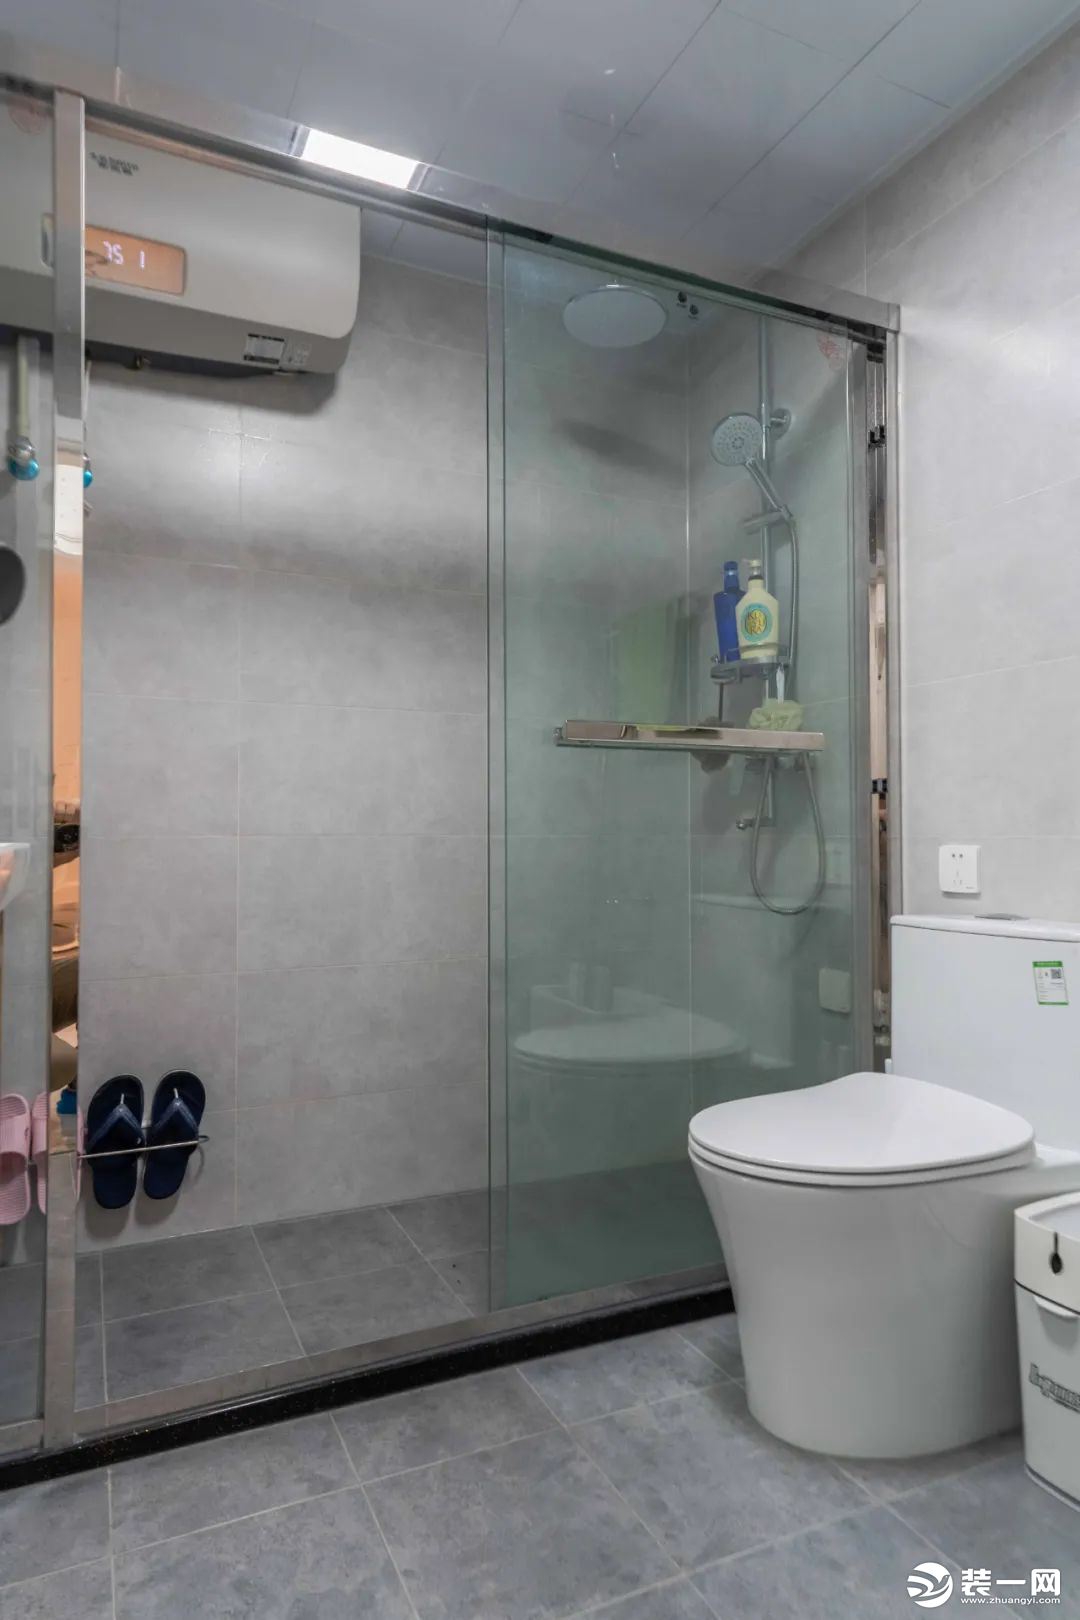 卫生间内部有独立的淋浴房，全透明的玻璃设计不仅有着超高颜值，还使得空间格外通透明亮。